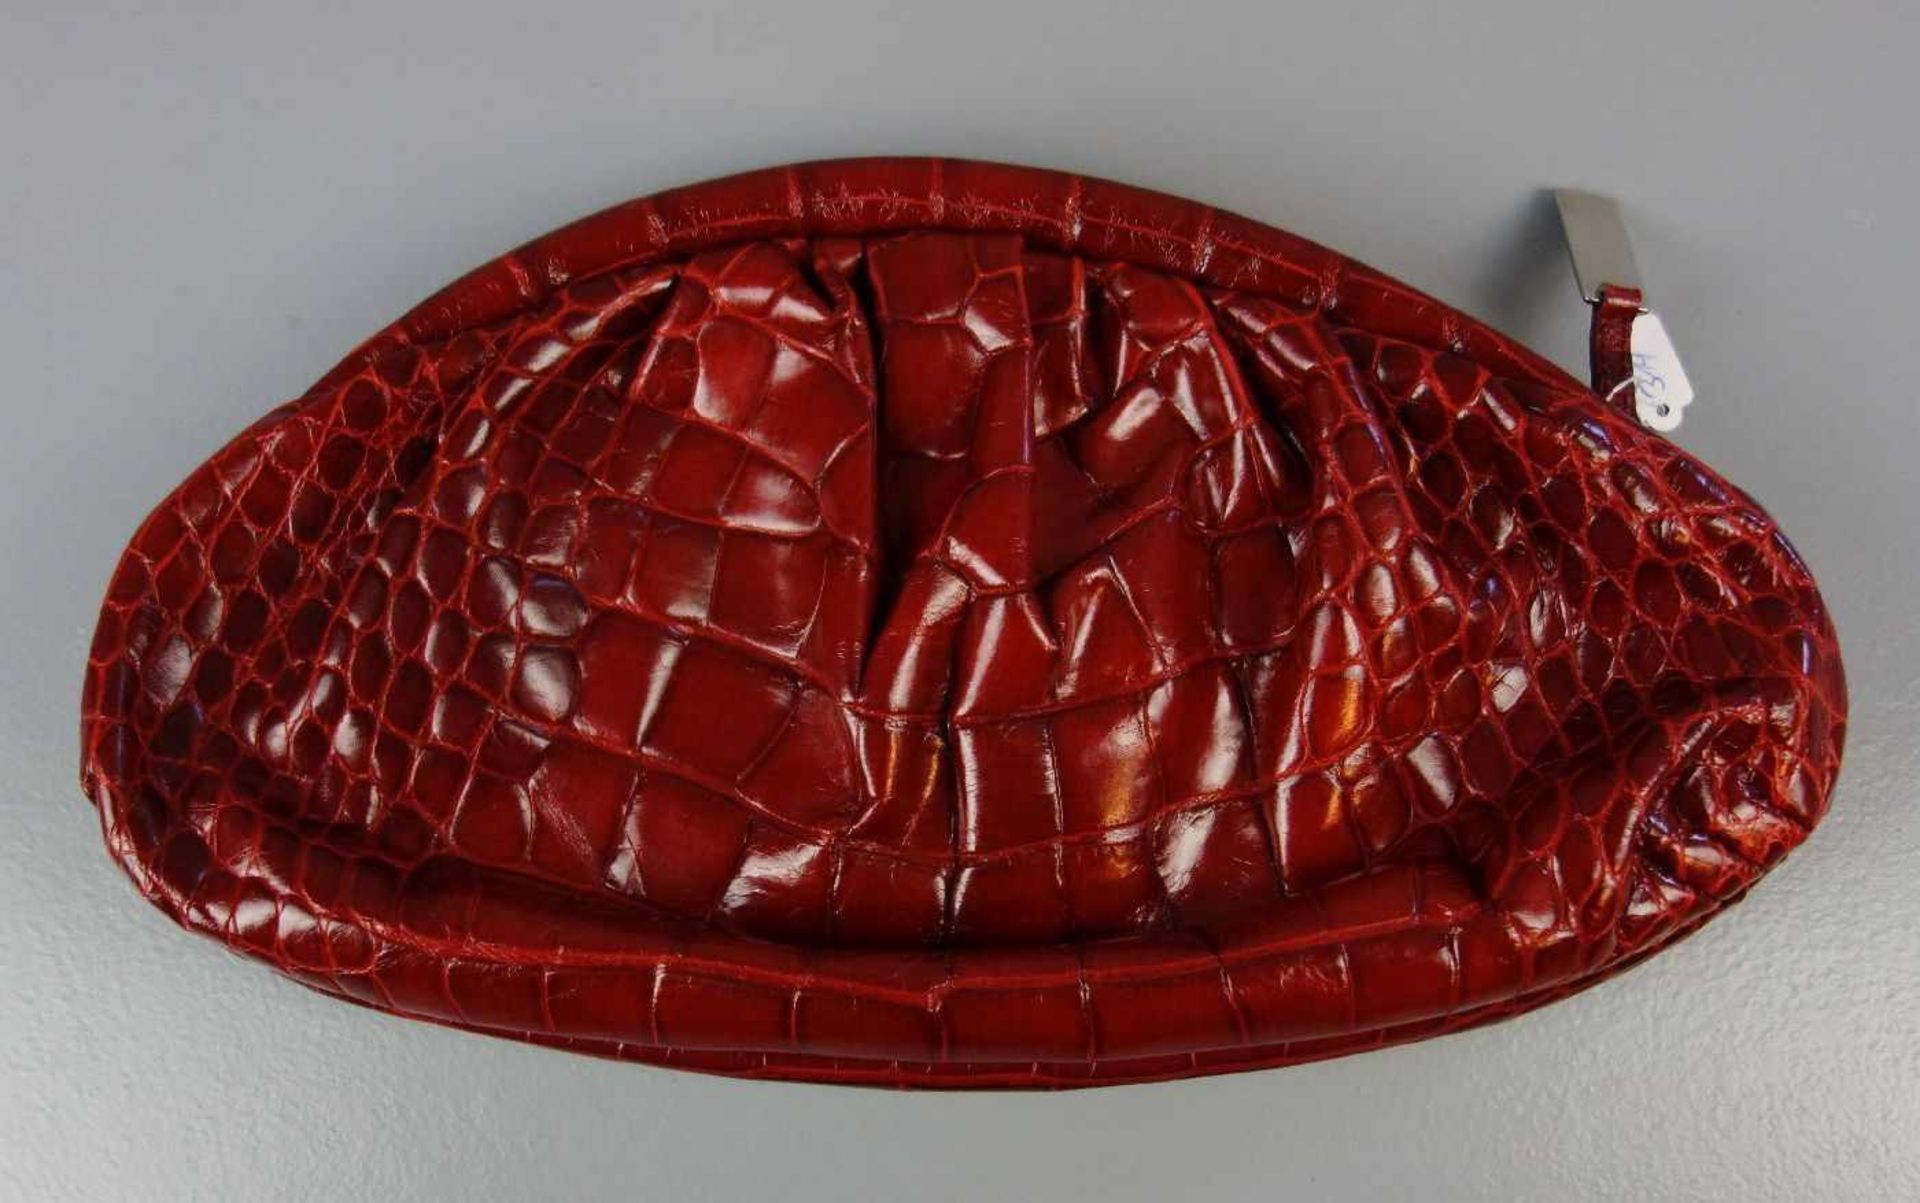 FURLA - CLUTCH / HANDTASCHE / handbag, Manufaktur Furla, Italien (seit 1927), rotes Rindsleder mit - Bild 2 aus 3